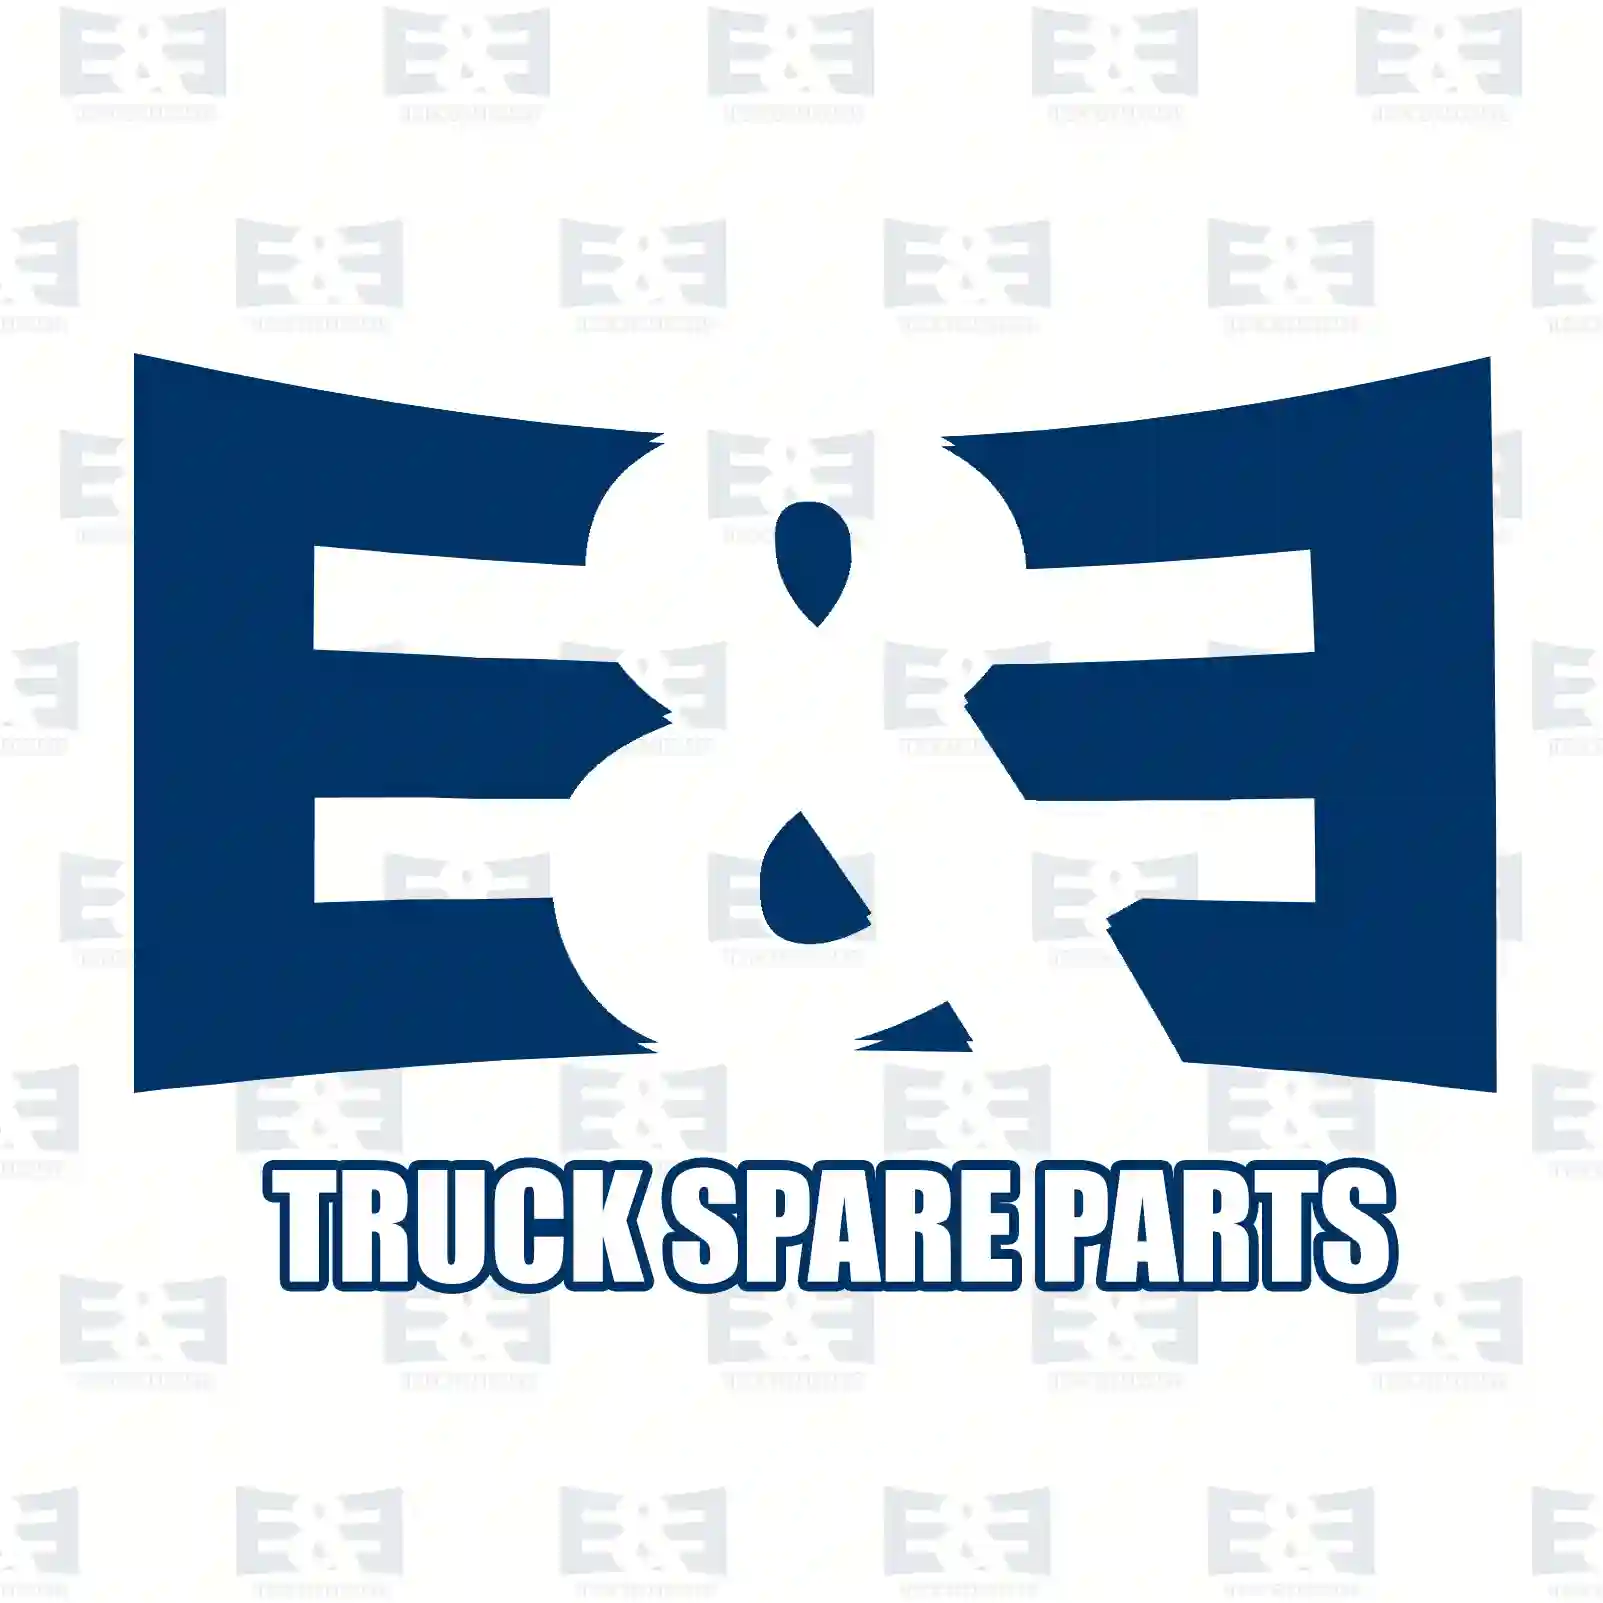 Wiper blade, 2E2293175, 1517868, 04735492, 42324389, 0008200445, 0008208045, 0008208145, 0018200445, 0018201145, 20537740, 20826591, 8143709, 8189631, 84035947, ZG21298-0008 ||  2E2293175 E&E Truck Spare Parts | Truck Spare Parts, Auotomotive Spare Parts Wiper blade, 2E2293175, 1517868, 04735492, 42324389, 0008200445, 0008208045, 0008208145, 0018200445, 0018201145, 20537740, 20826591, 8143709, 8189631, 84035947, ZG21298-0008 ||  2E2293175 E&E Truck Spare Parts | Truck Spare Parts, Auotomotive Spare Parts